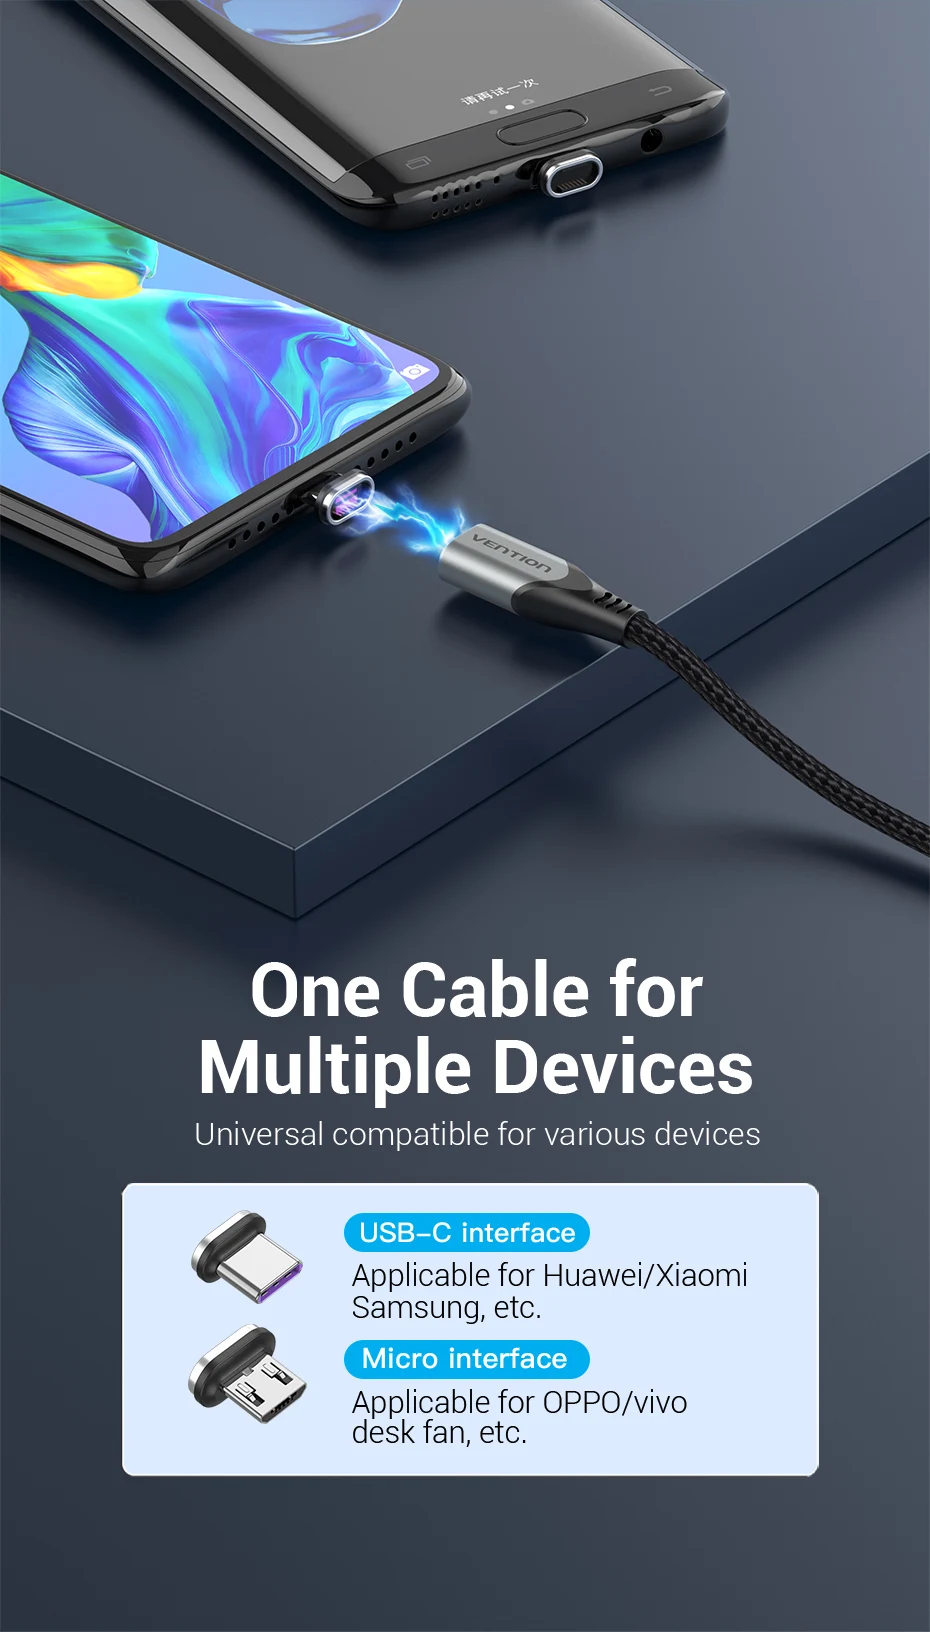 Cable de carga magnética 5A Cable de carga rápida USB tipo C Cable mag